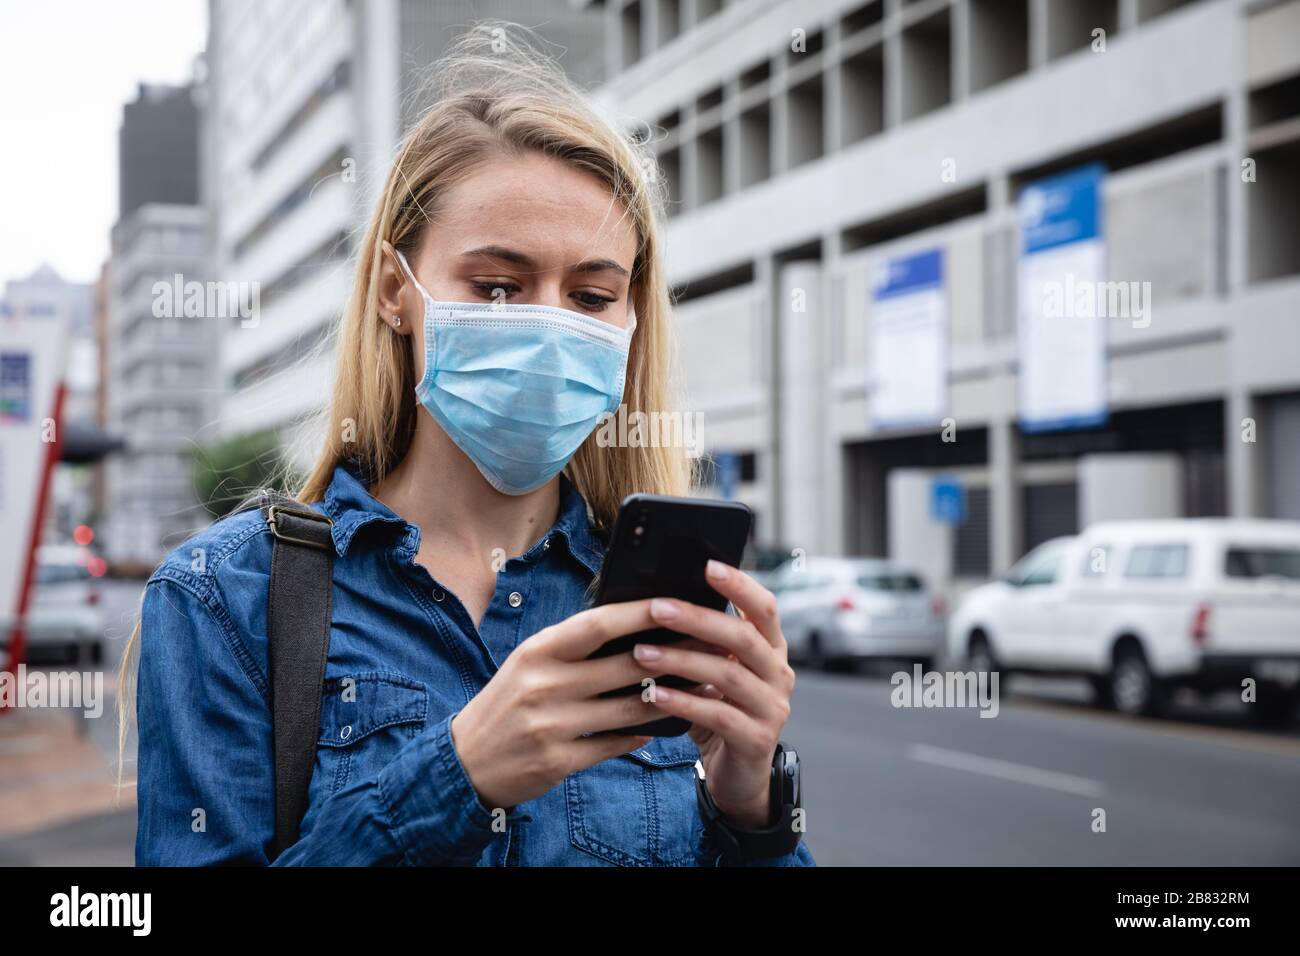 Kaukasische Frau, die eine kovidte 19-Coronavirus-Maske außerhalb und mit ihrem Telefon trägt Stockfoto